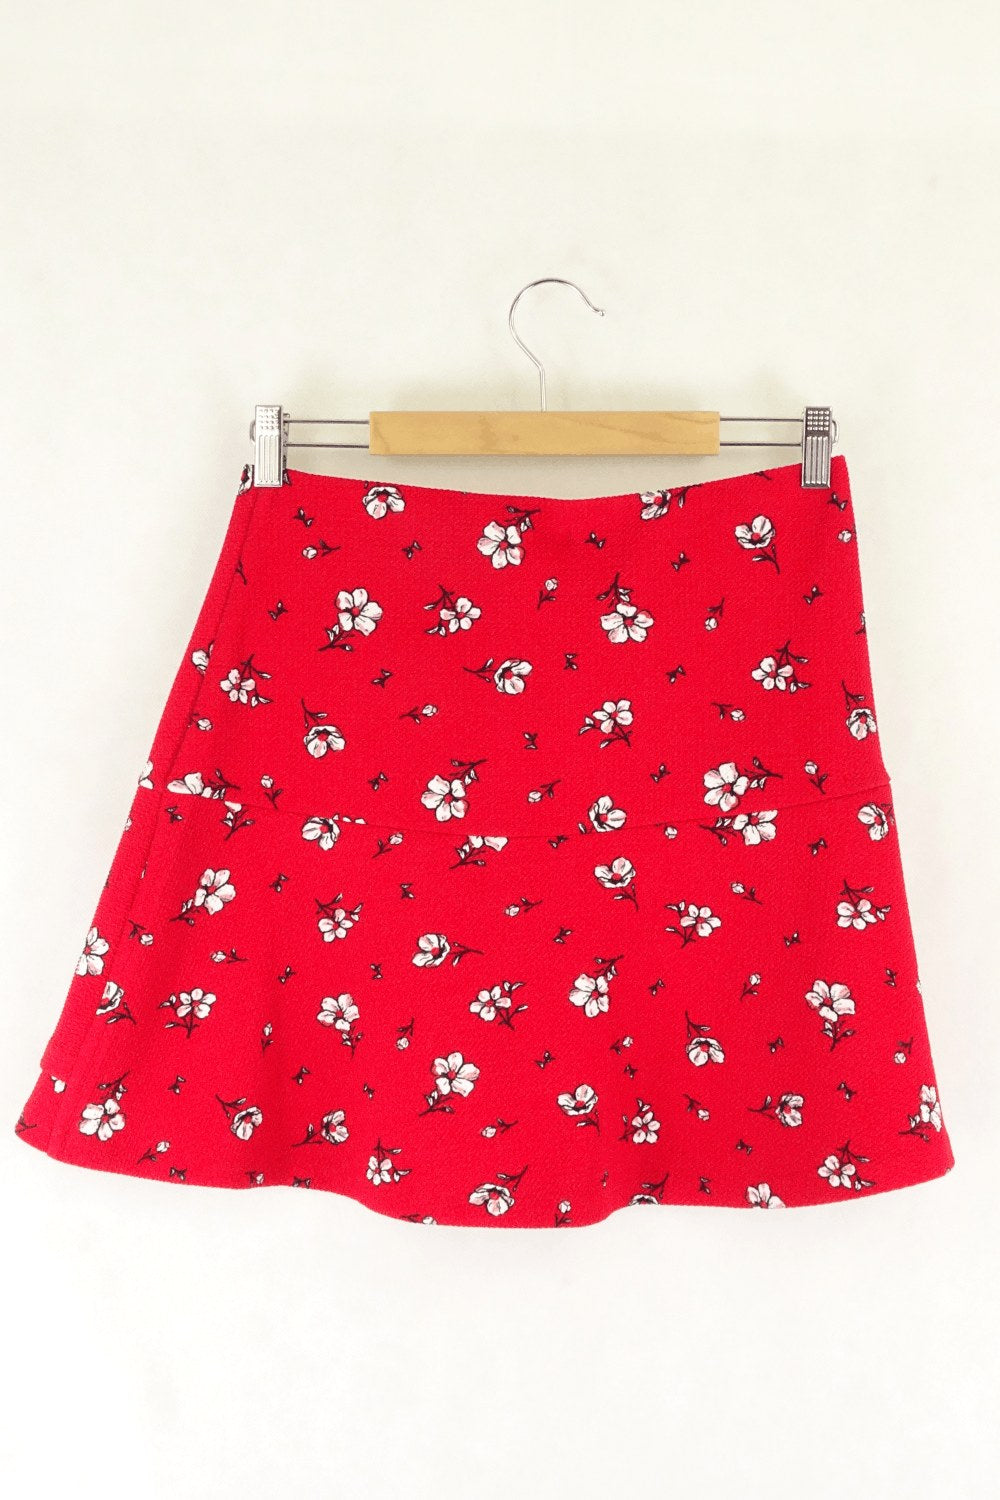 Sportsgirl Red Patterned Mini Skirt S